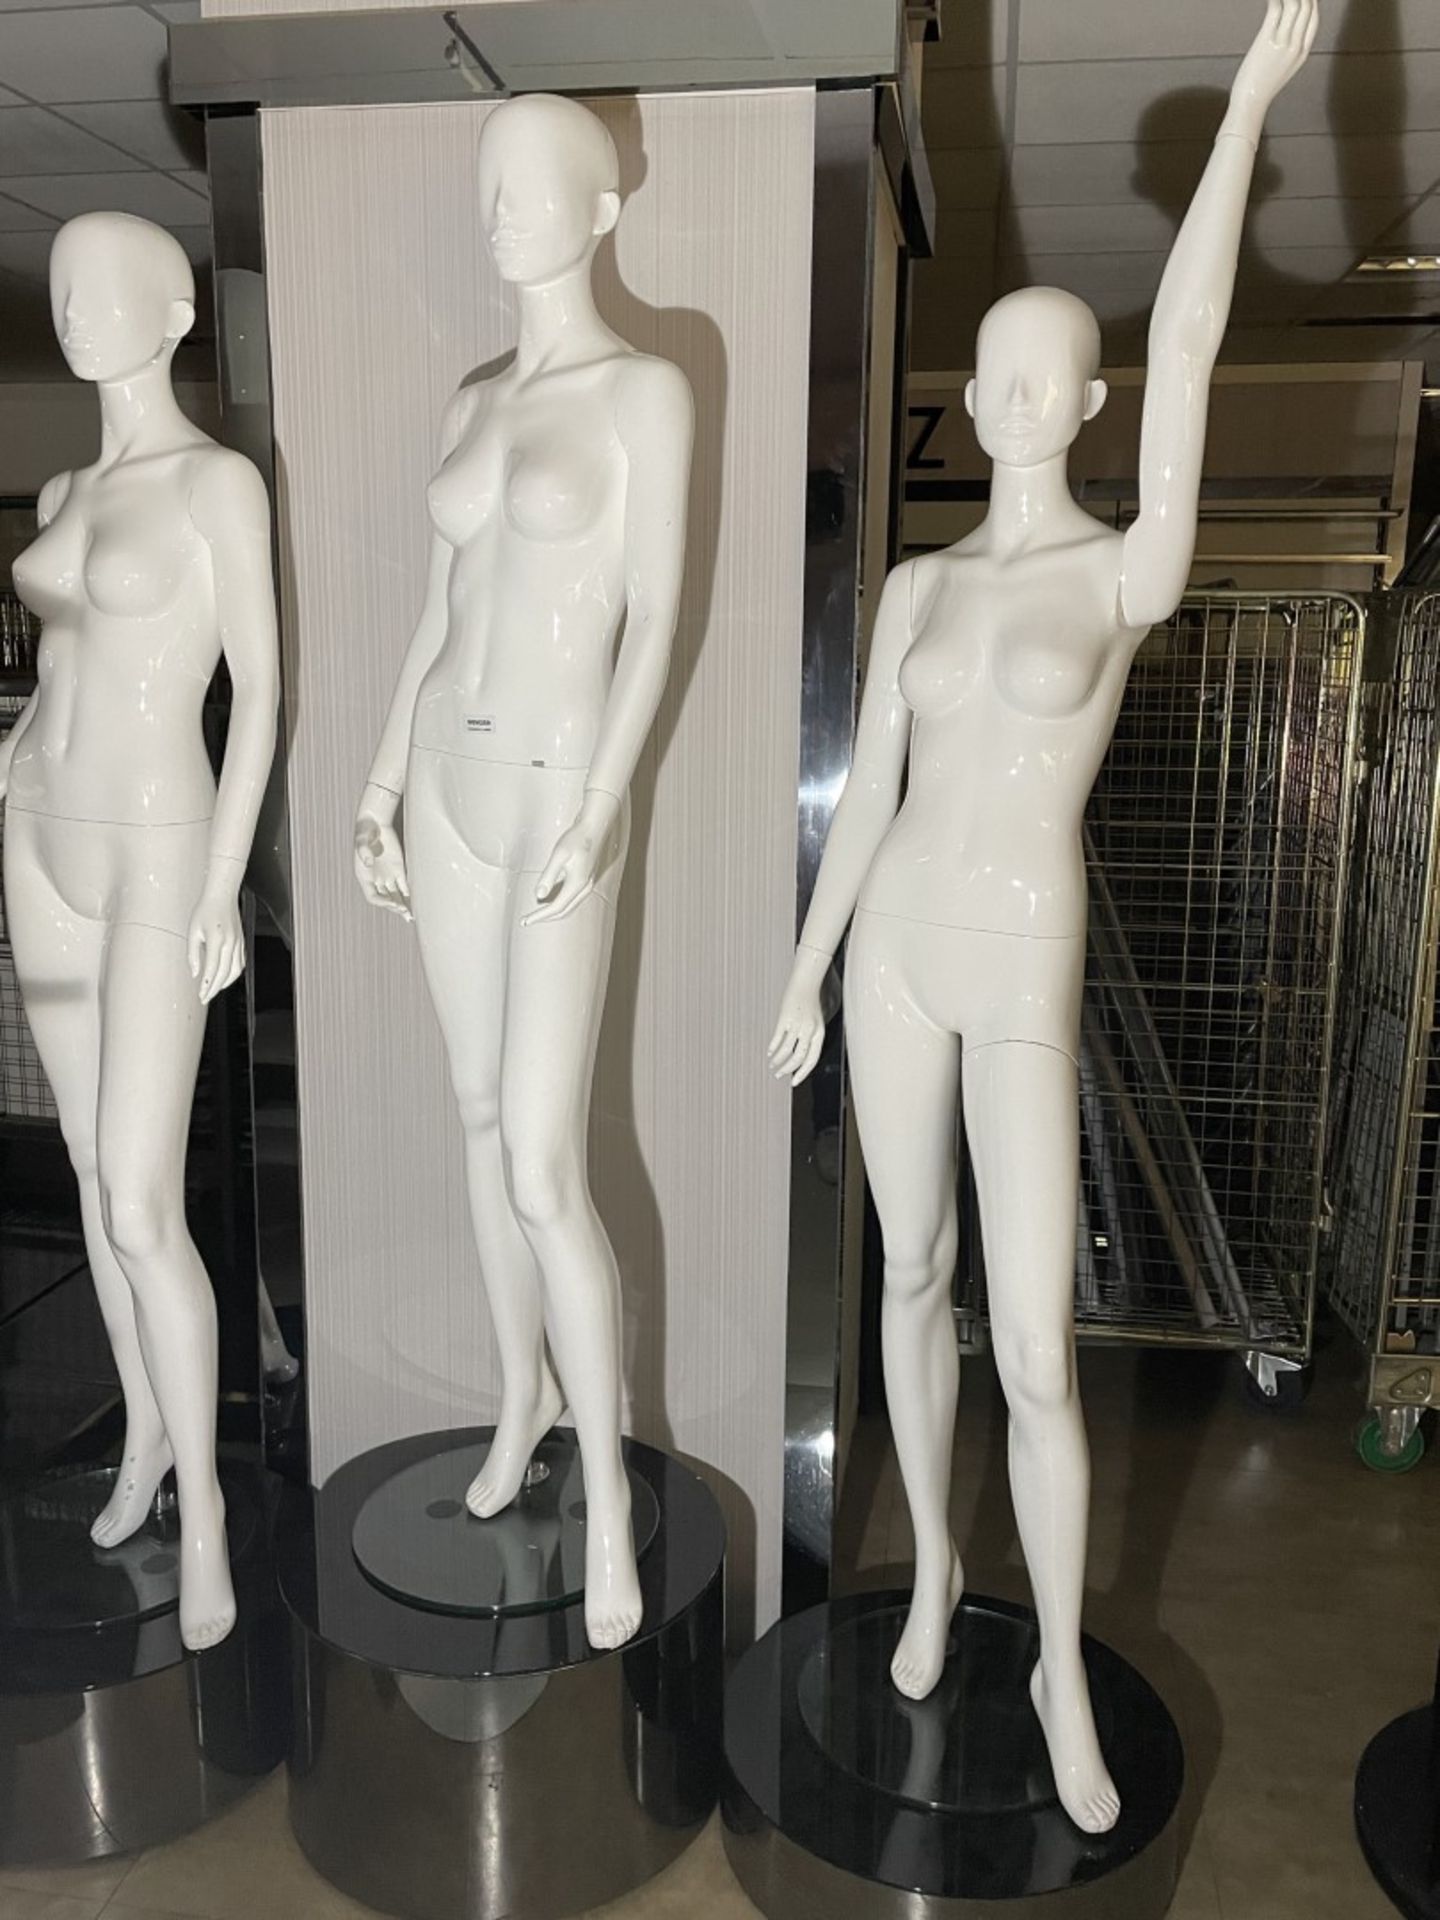 3 x Full Size Female Mannequins on Pedestal Plinth Stands - CL670 - Ref: GEM259 - Location: - Image 2 of 12